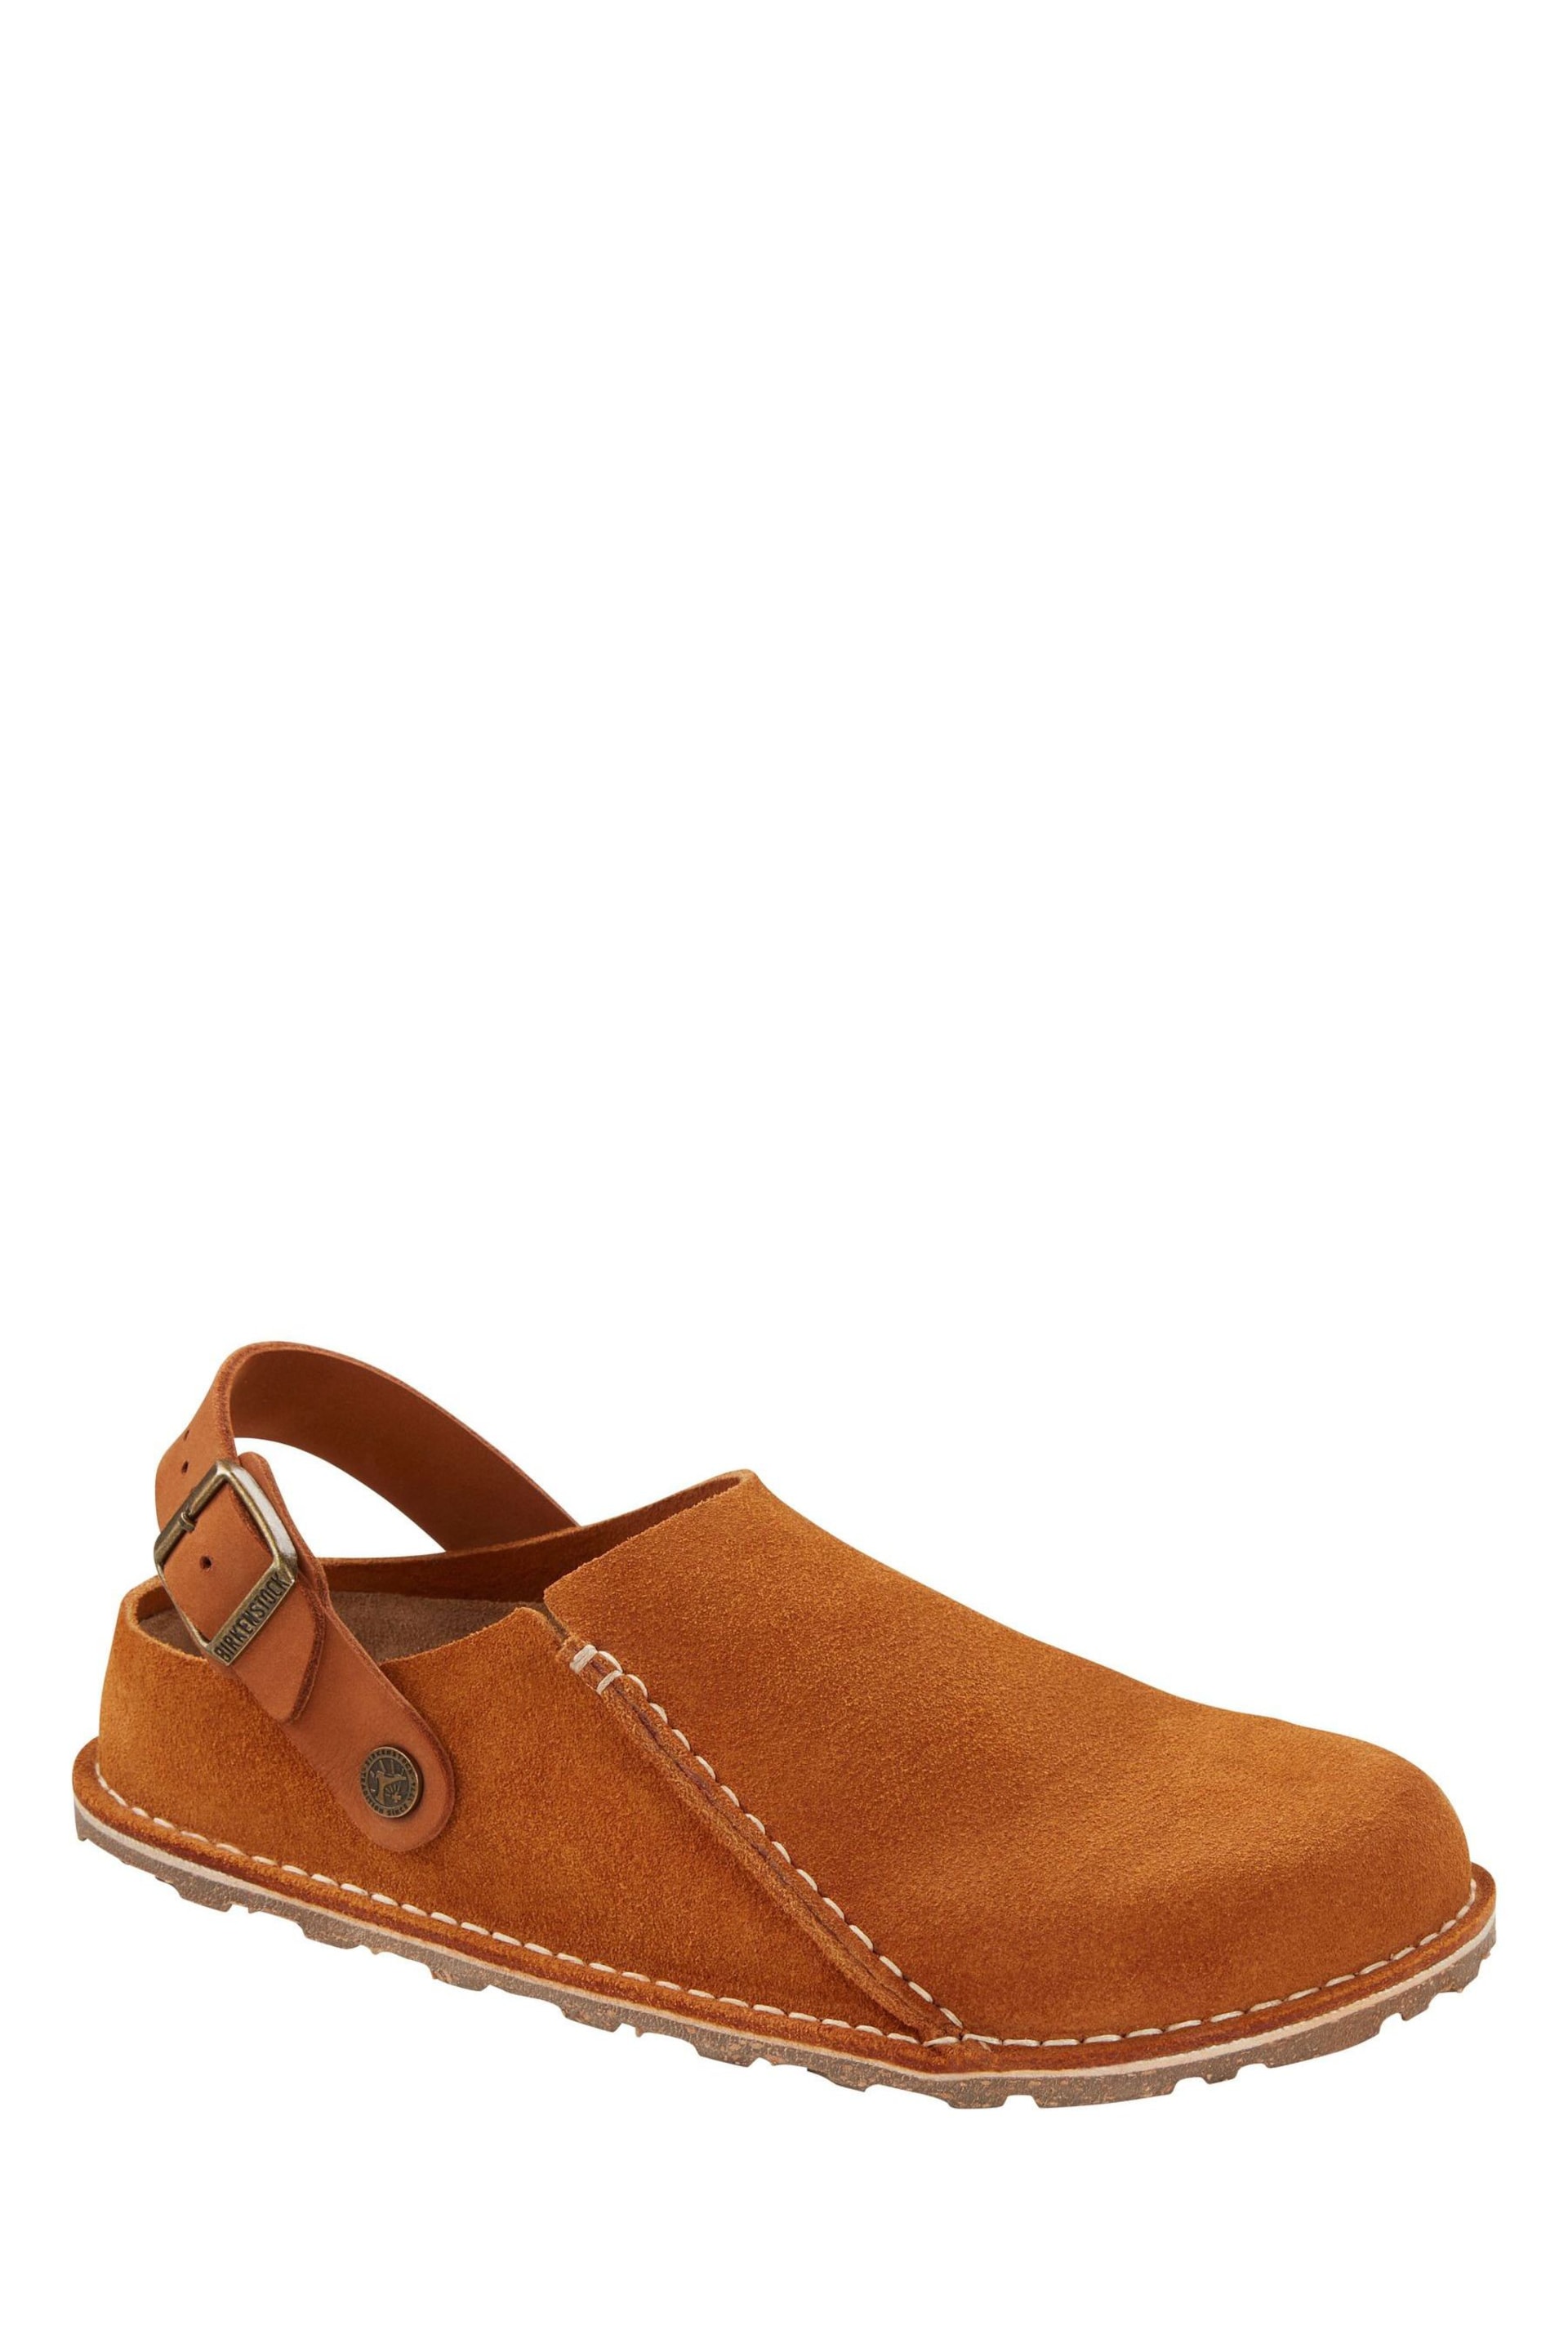 Birkenstock Lutry Premium Suede Shoes - Image 4 of 5